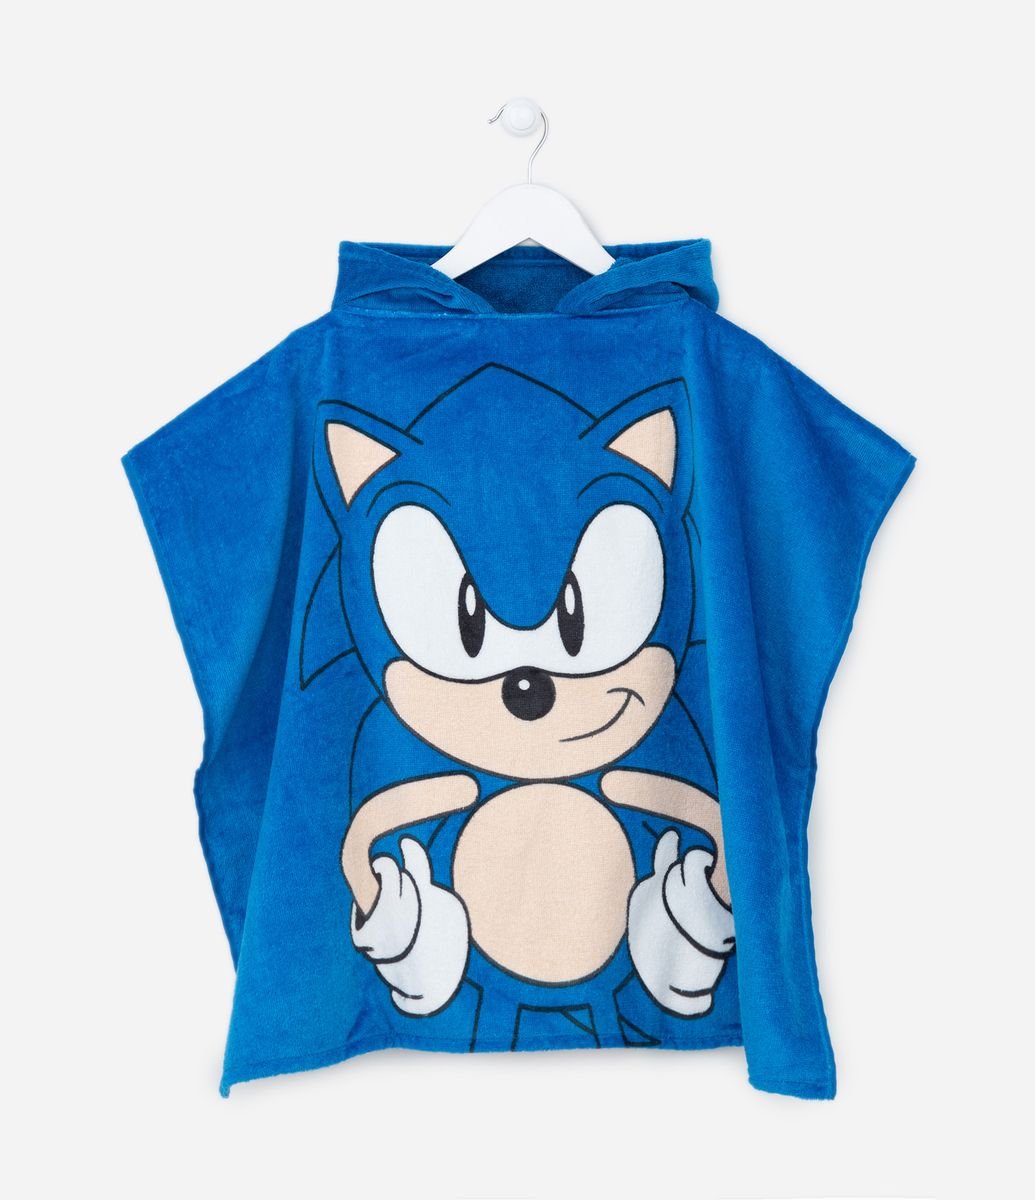 Pack de 5 boxers - Azul/Sonic the Hedgehog - CRIANÇA